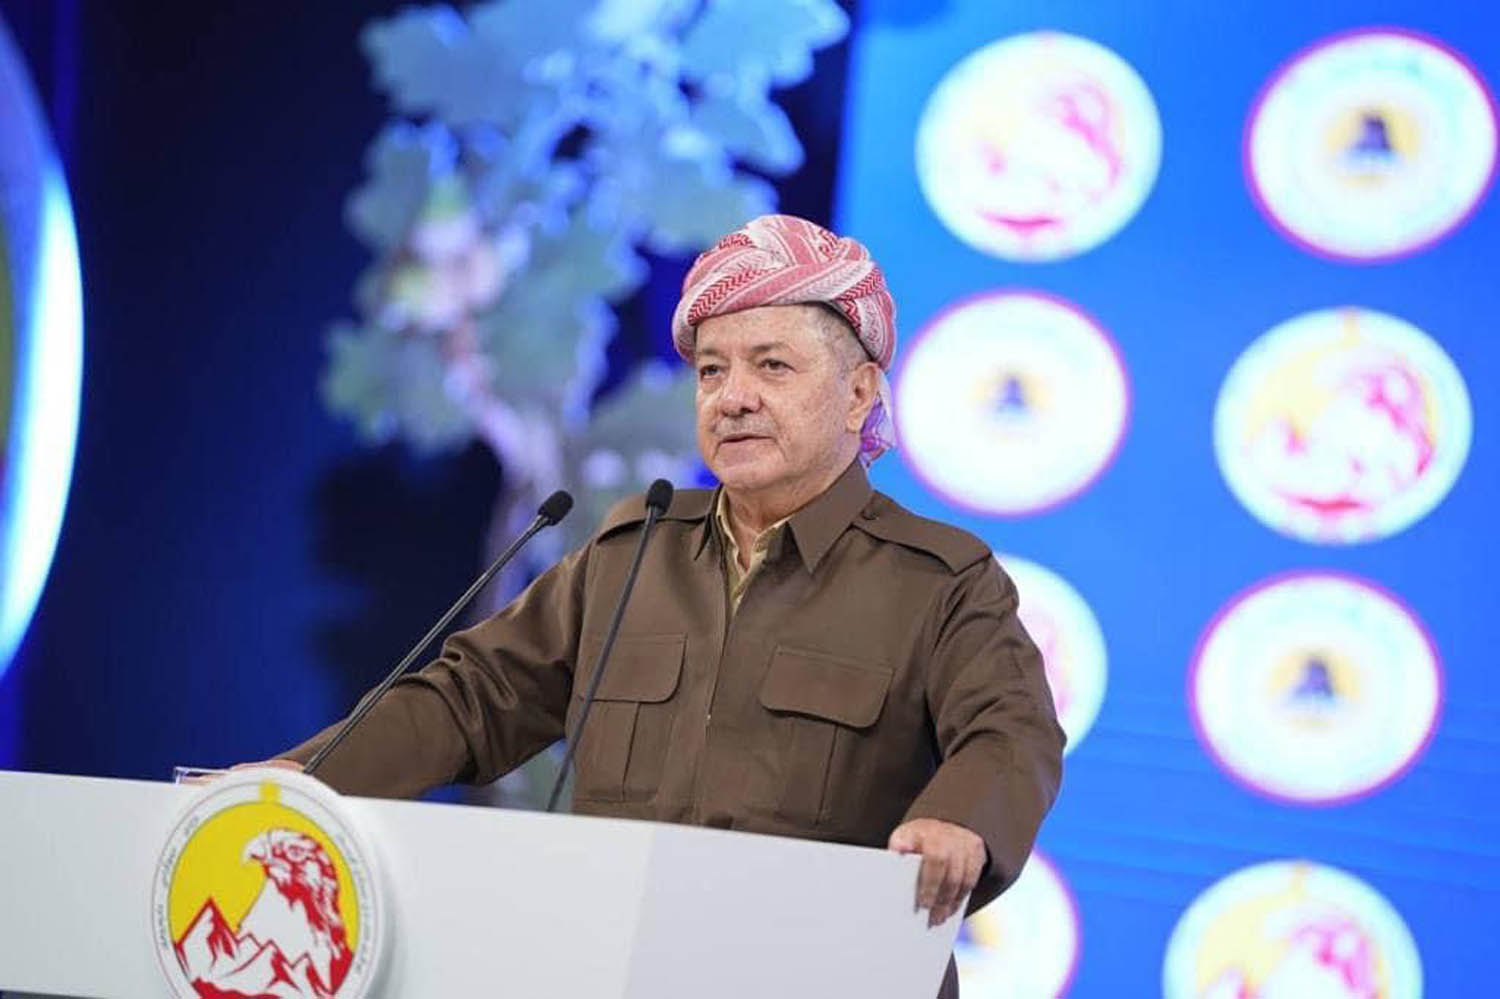 الزعيم الكردي مسعود بارزاني يلقي كلمة خلال مؤتمر البارتي